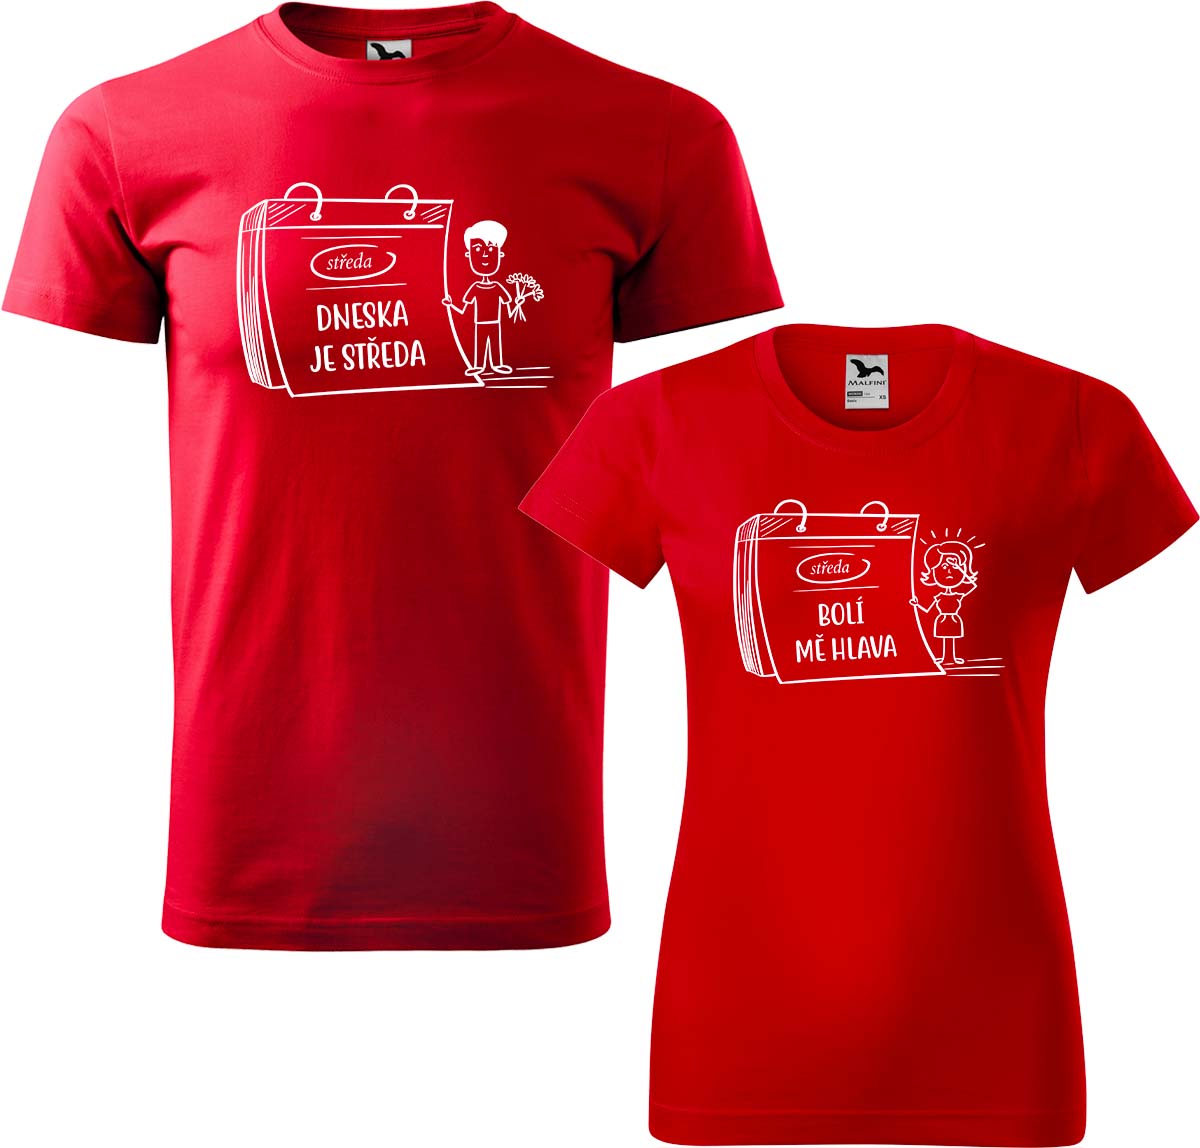 Trička pro páry - Dneska je středa Barva: Červená (07), Velikost dámské tričko: S, Velikost pánské tričko: XL